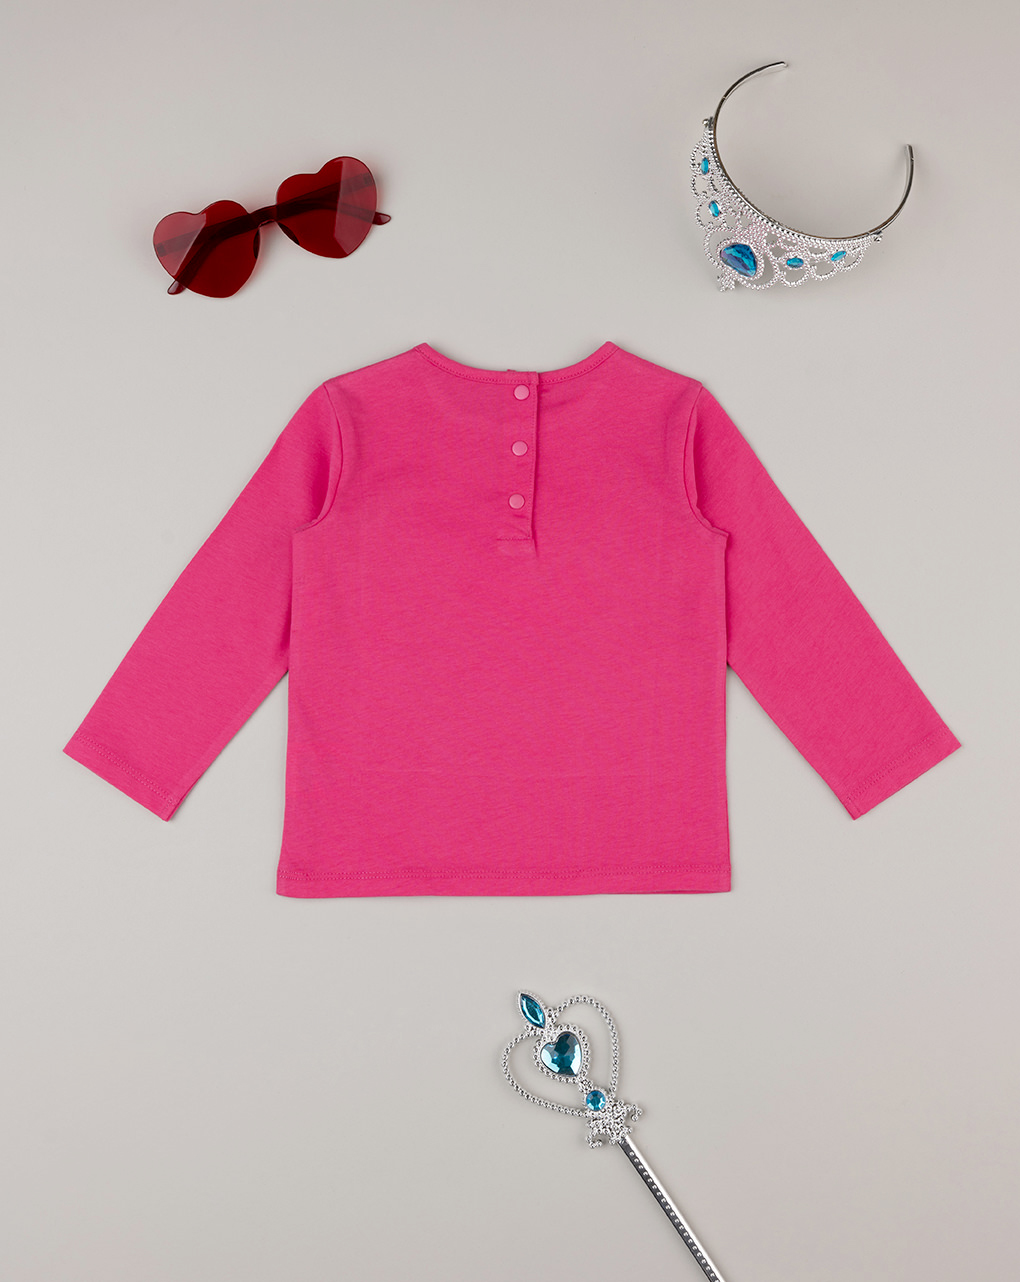 βρεφική μπλούζα φούξια με μονόκερο για κορίτσι - Prénatal